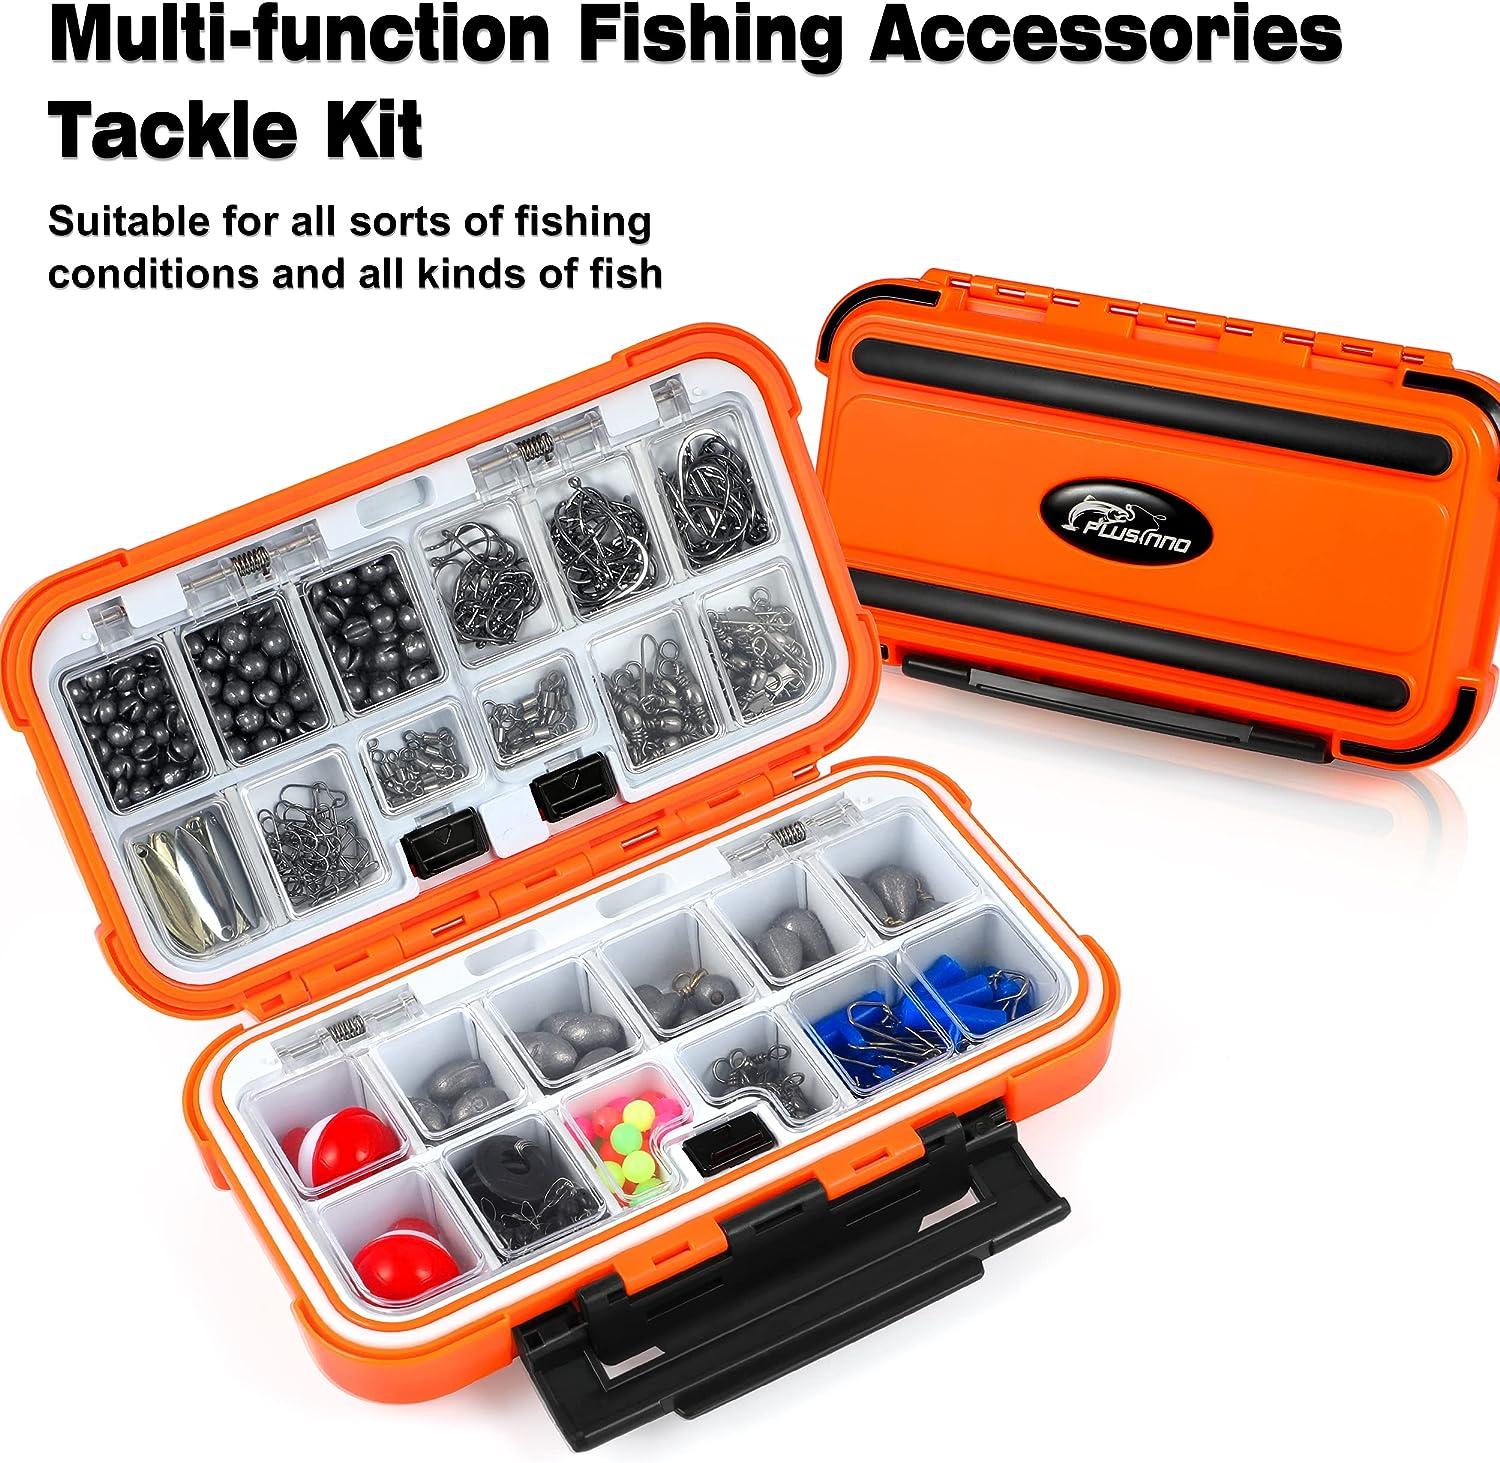  PLUSINNO 264pcs Fishing Accessories Kit, Organized